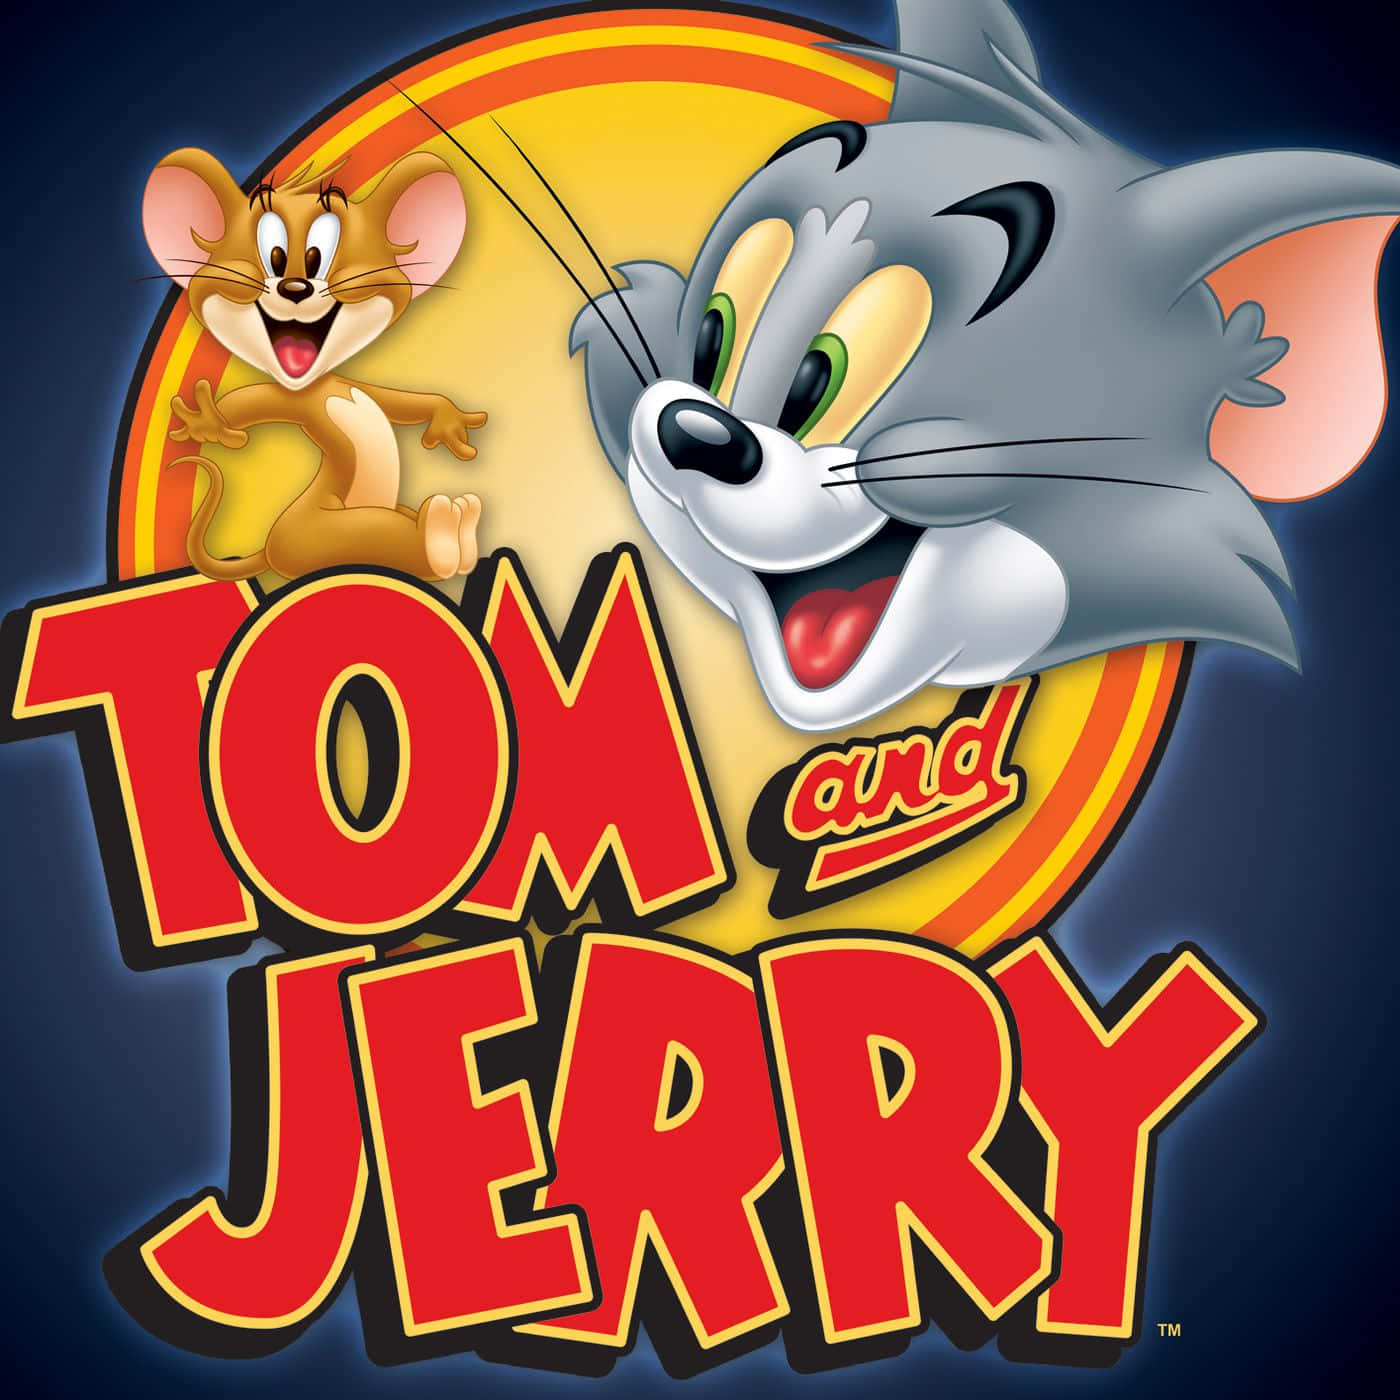 Tomund Jerry Haben Eine Lange Geschichte, Sich Gegenseitig Auszutricksen.